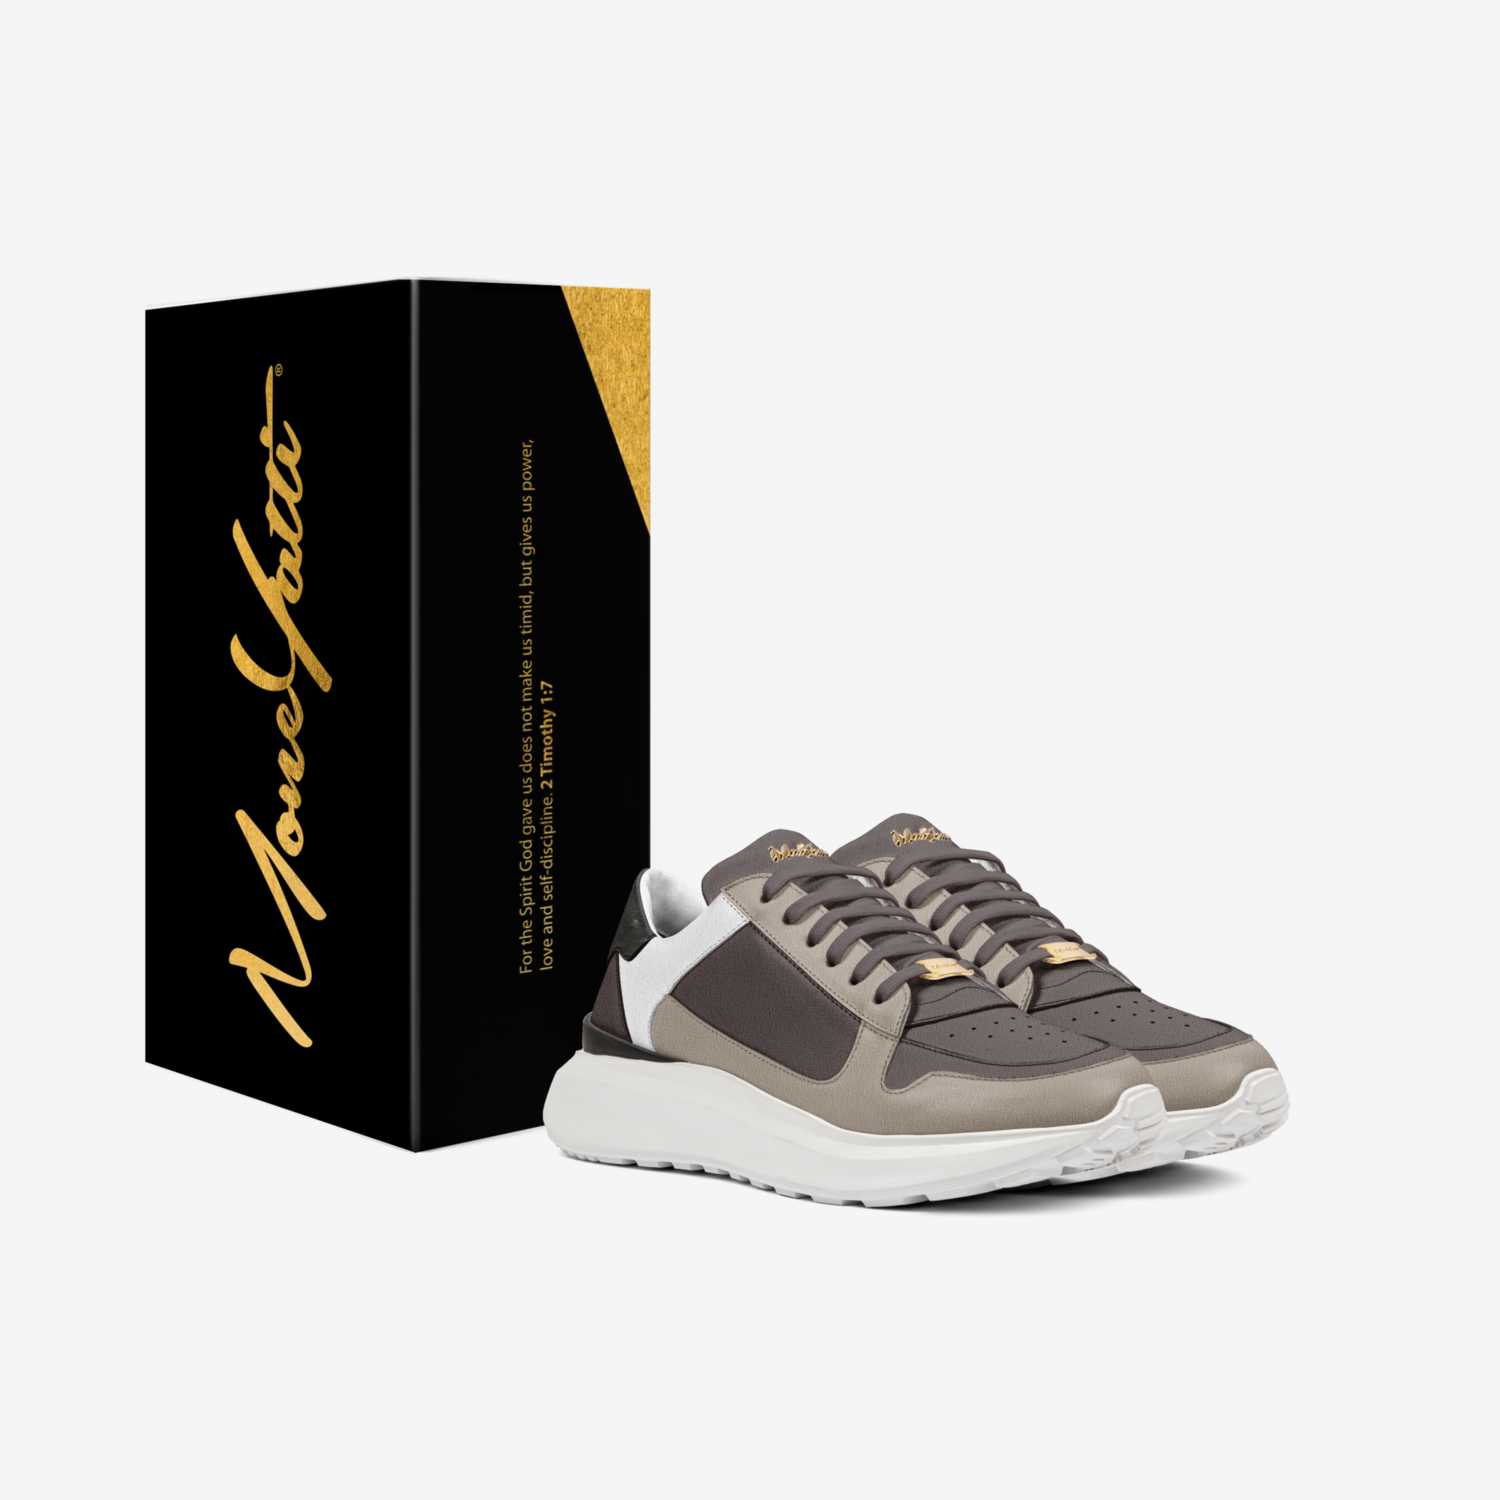  MONEYATTI CI027 custom made in Italy shoes by Moneyatti Brand | Box view